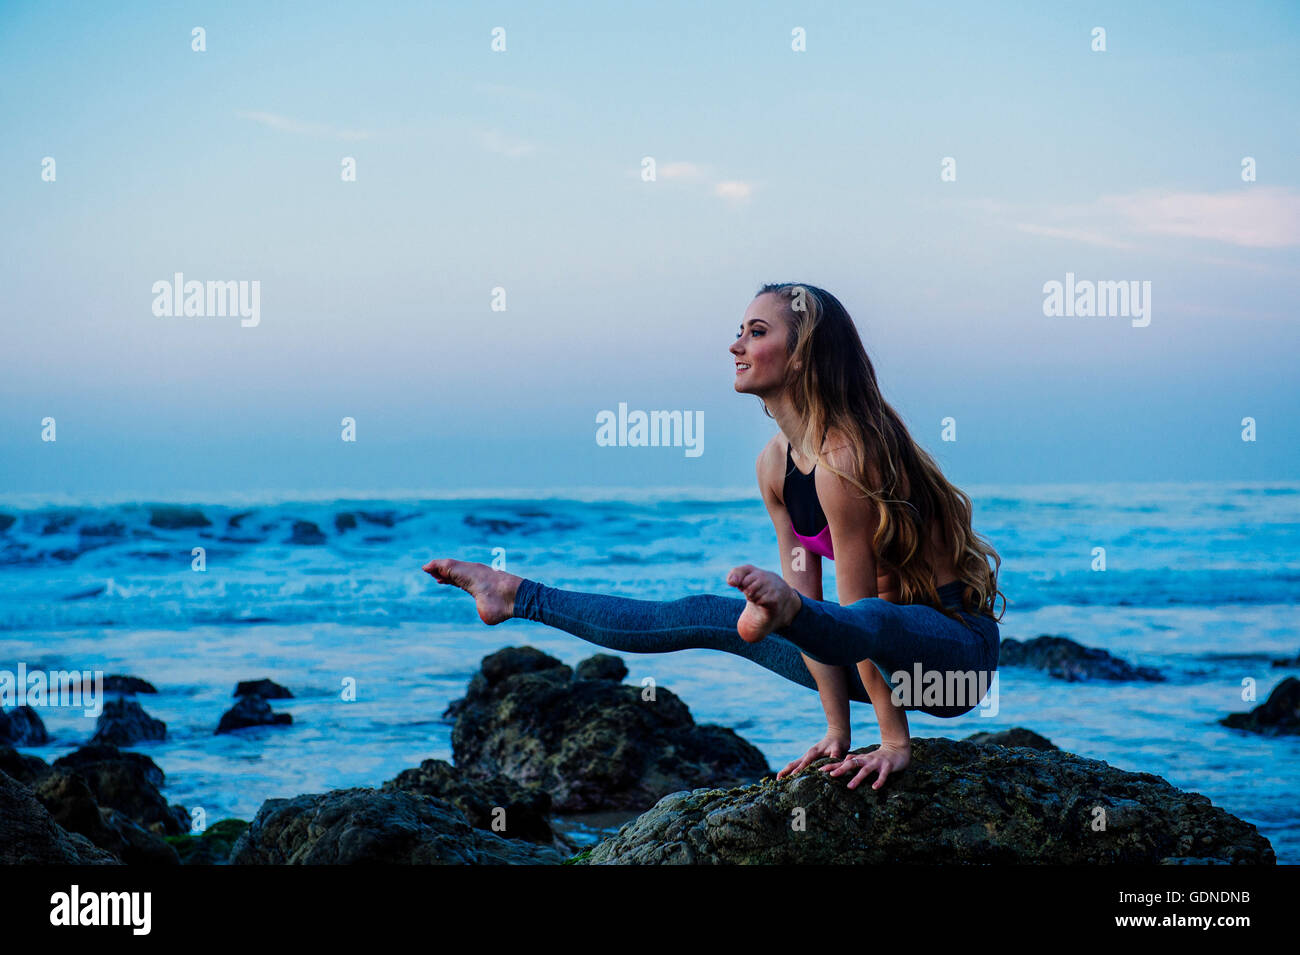 Young woman practicing yoga pose sur des roches en beach, Los Angeles, Californie, USA Banque D'Images